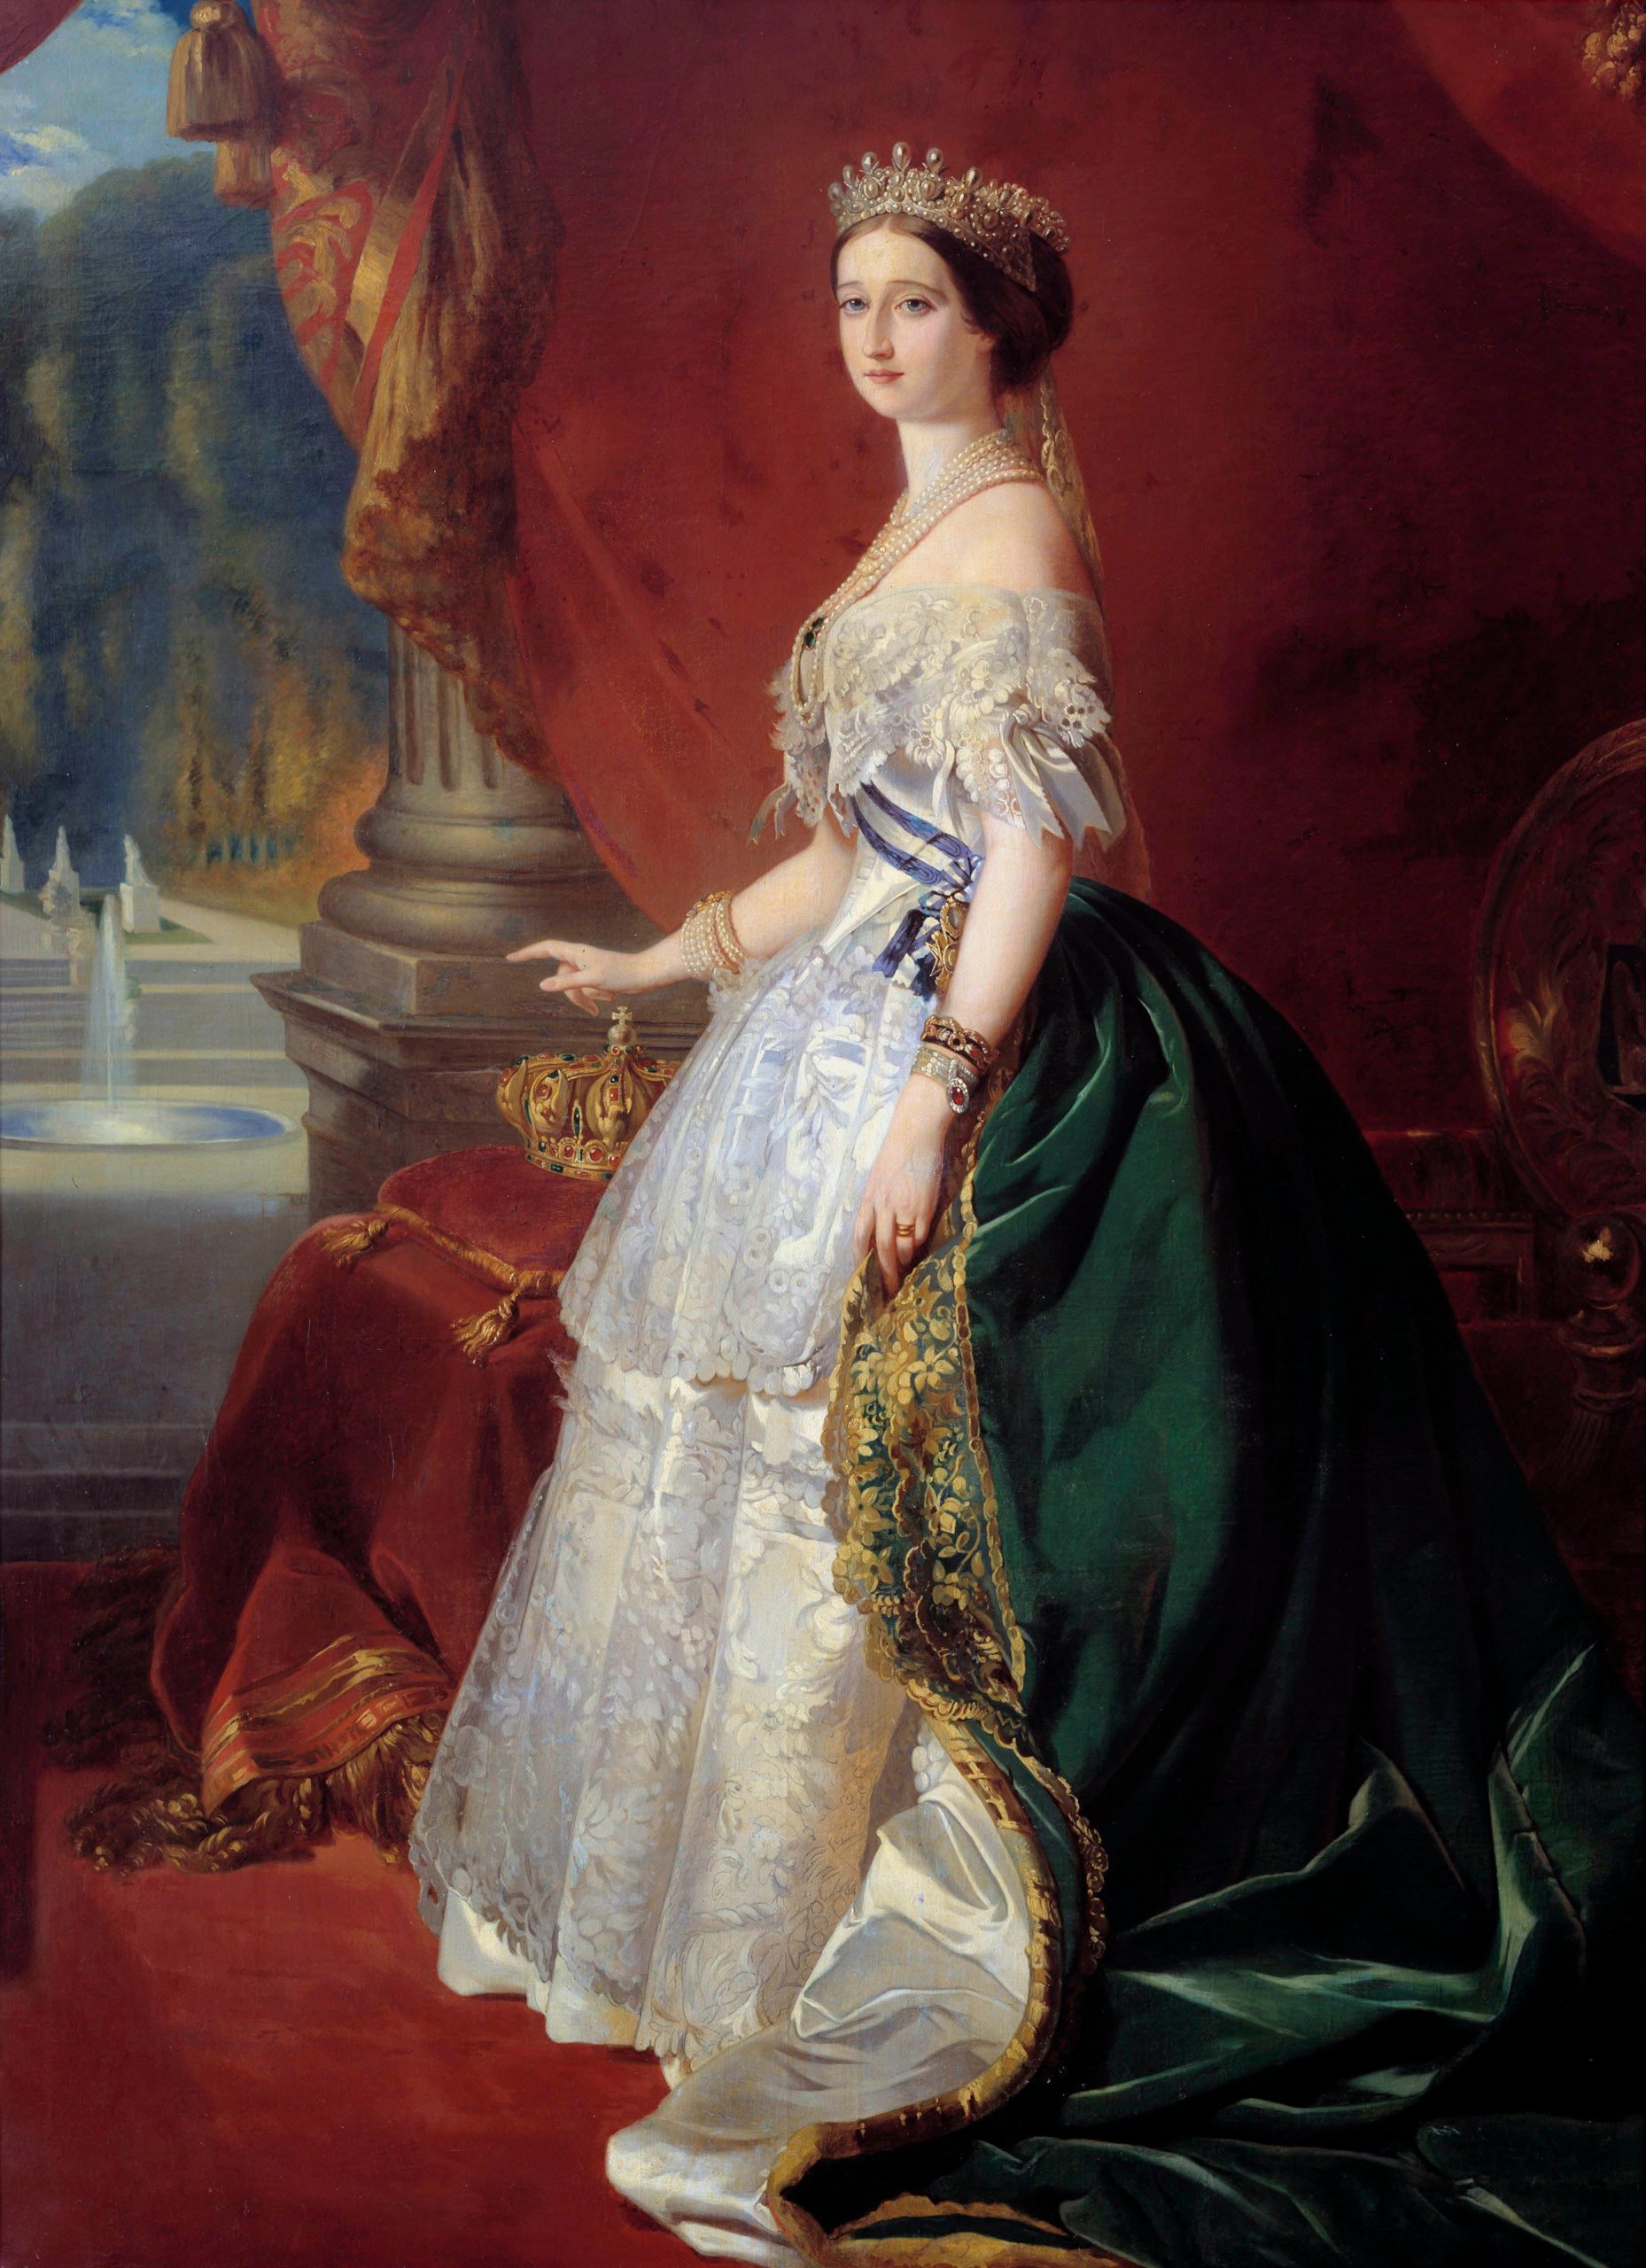 2 FEBBRAIO 1836: MADAME MÈRE MUORE A ROMA